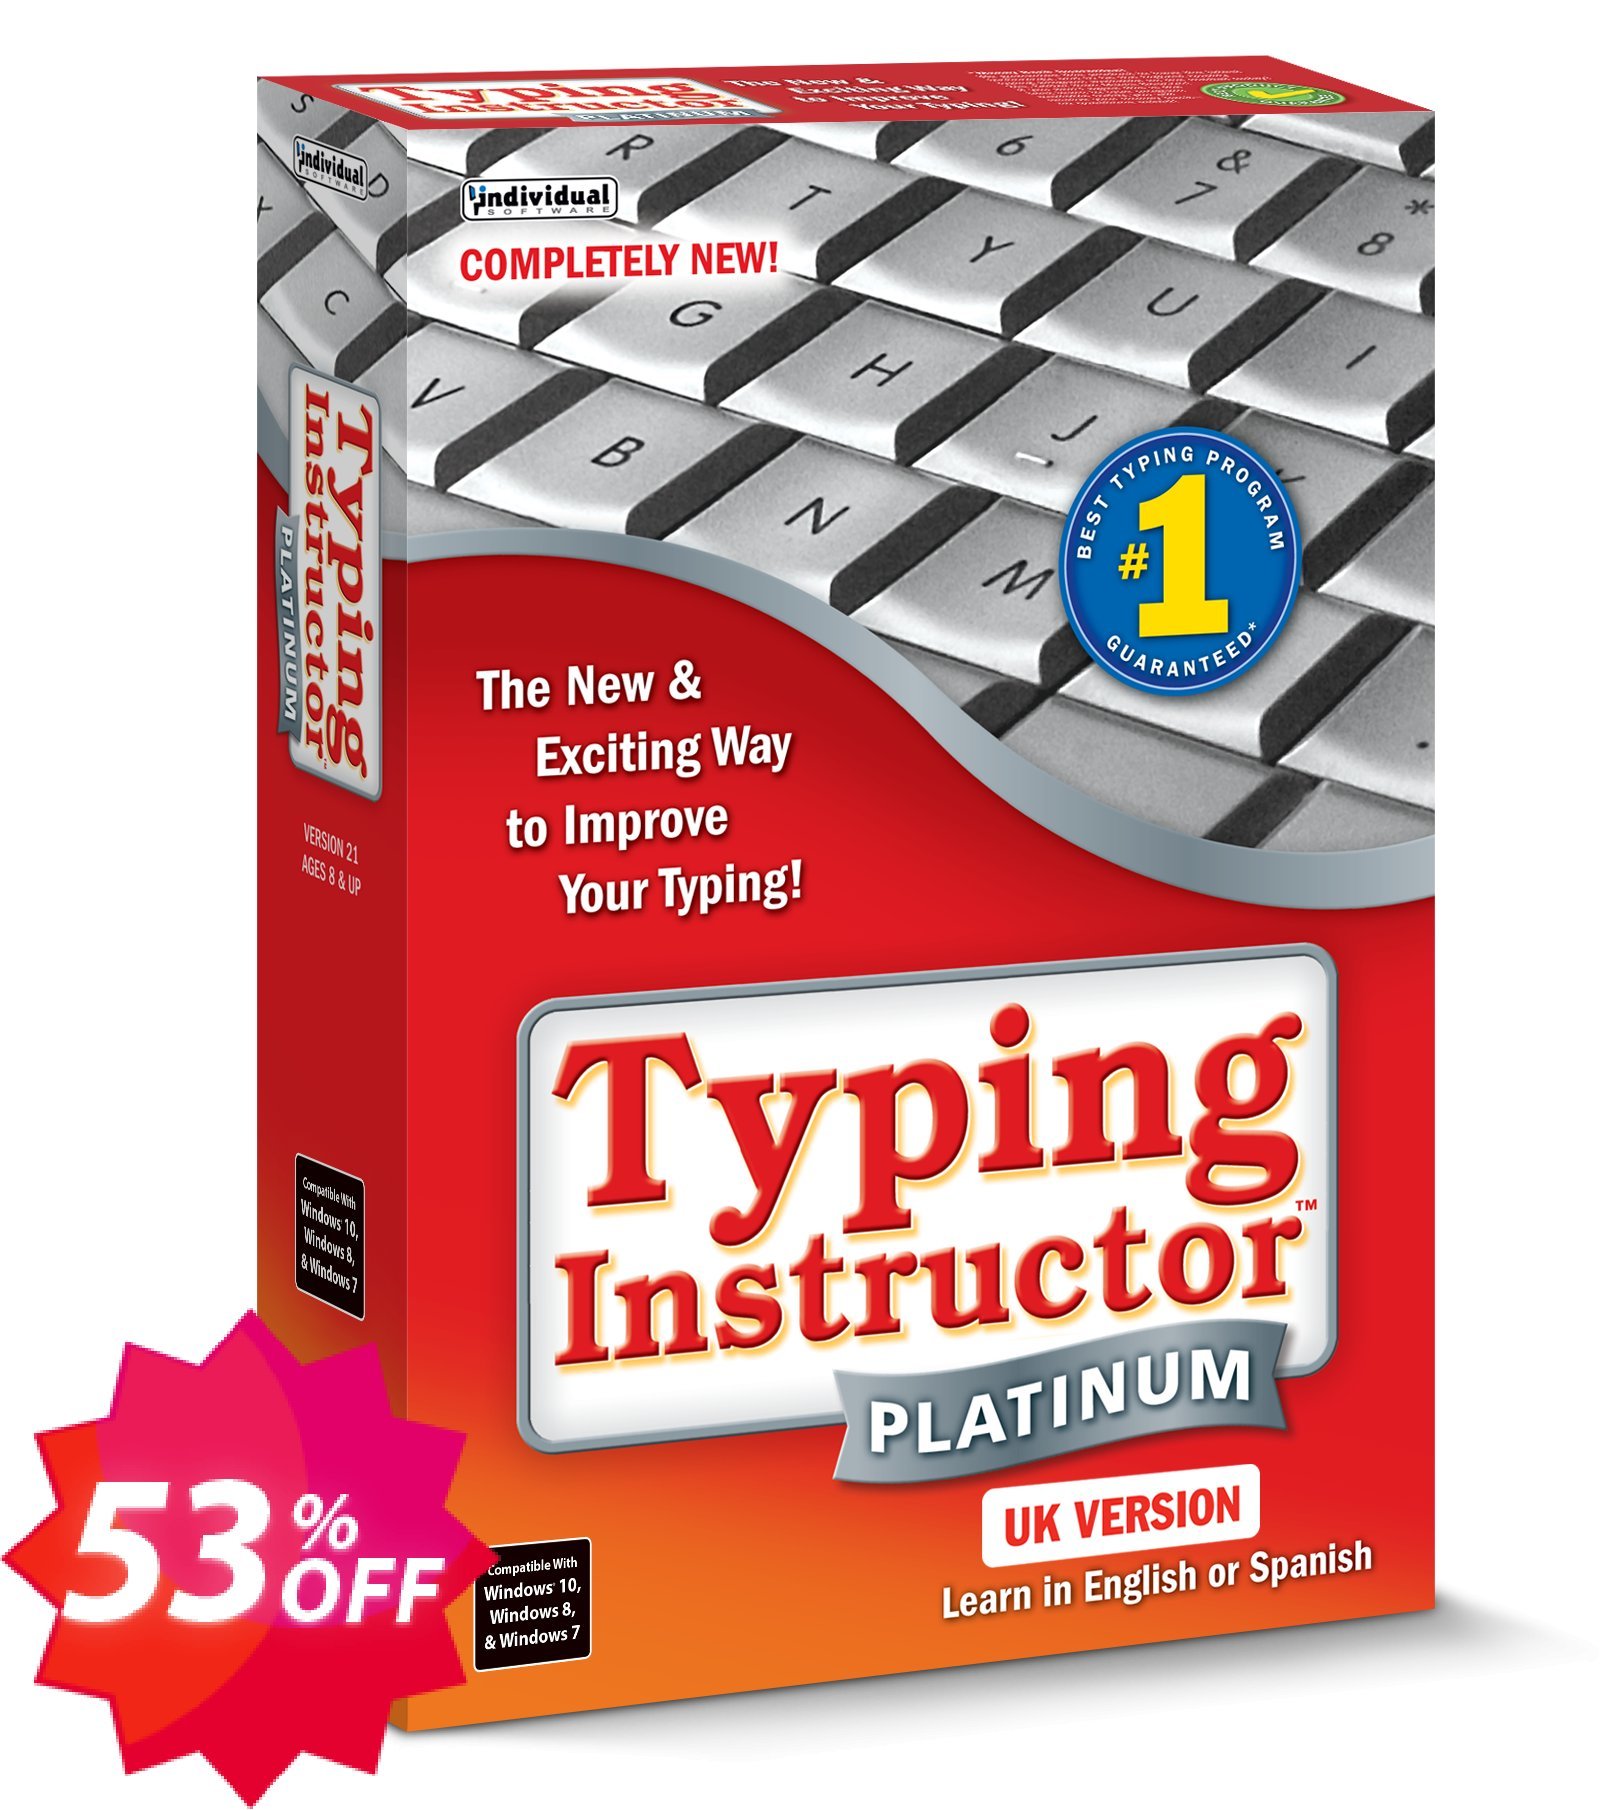 Typing Instructor Platinum - International Version UK Keyboard Coupon code 53% discount 